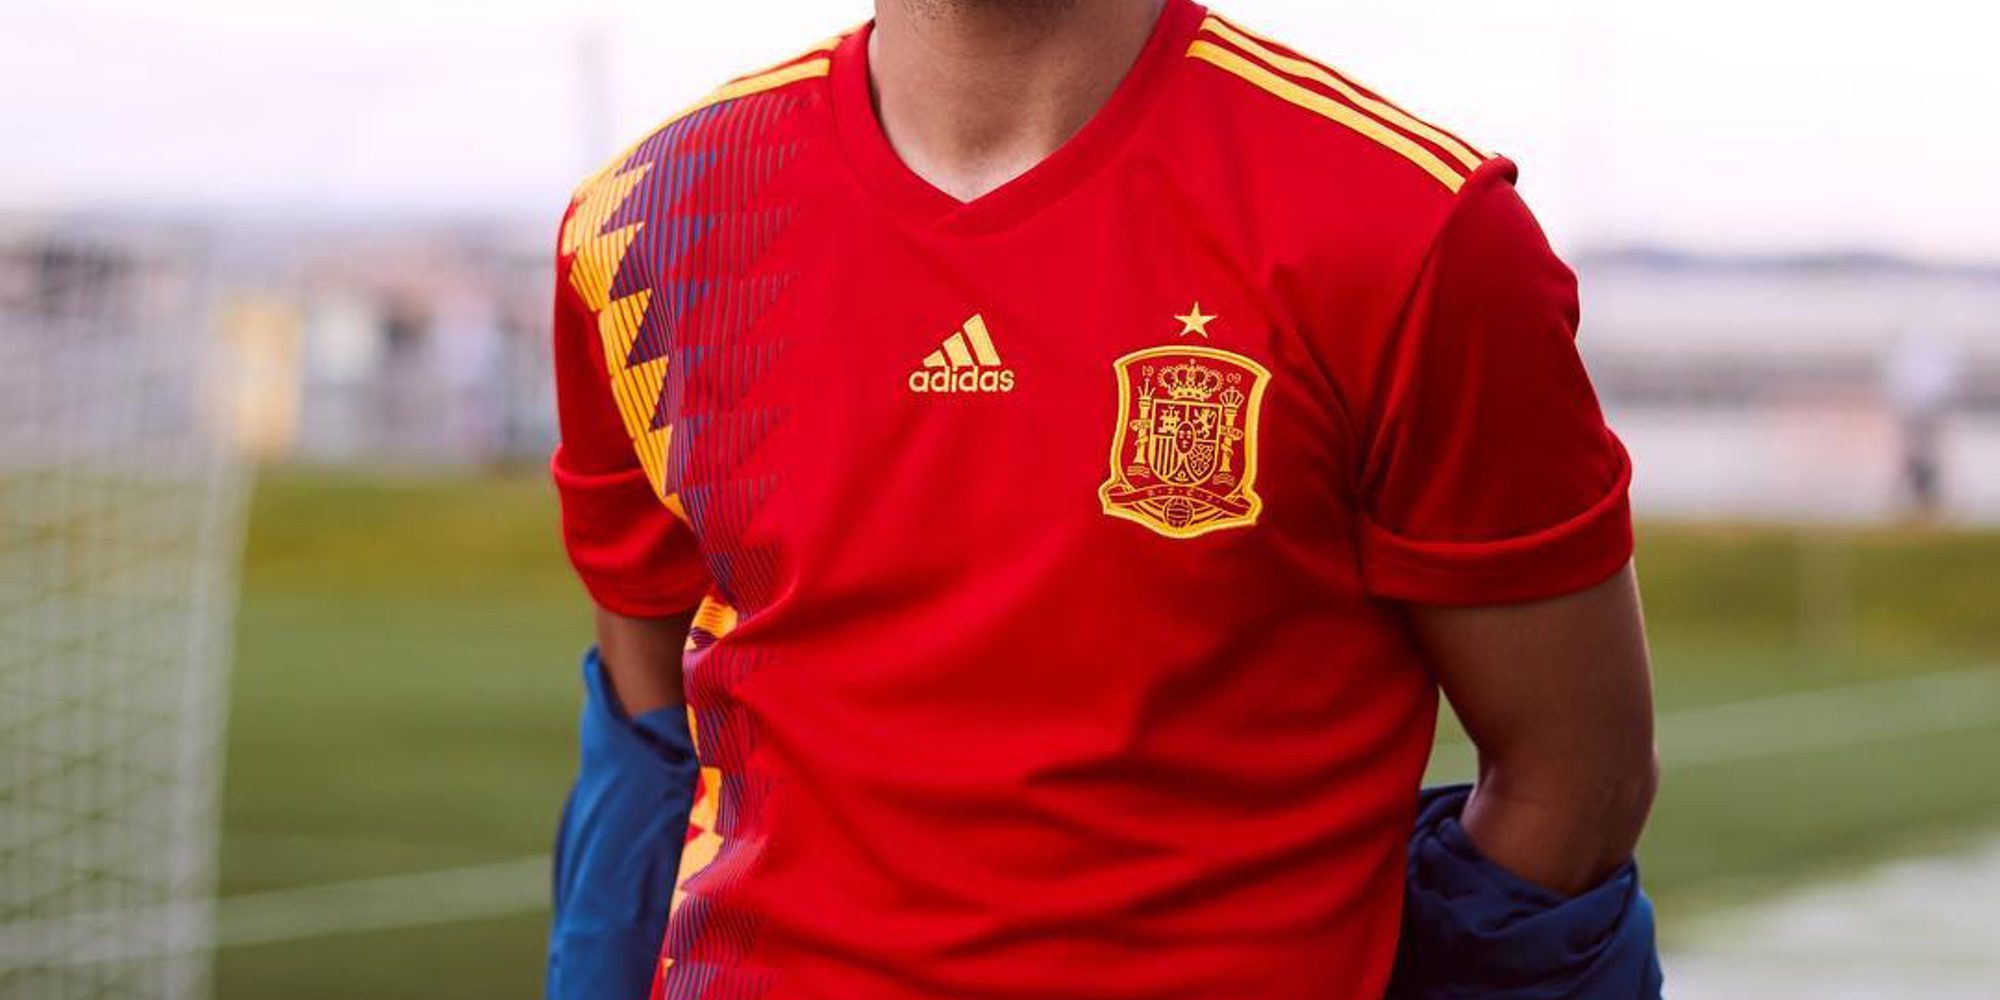 La nueva camiseta de la Selección Española crea polémica por sus colores parecidos a la bandera republicana